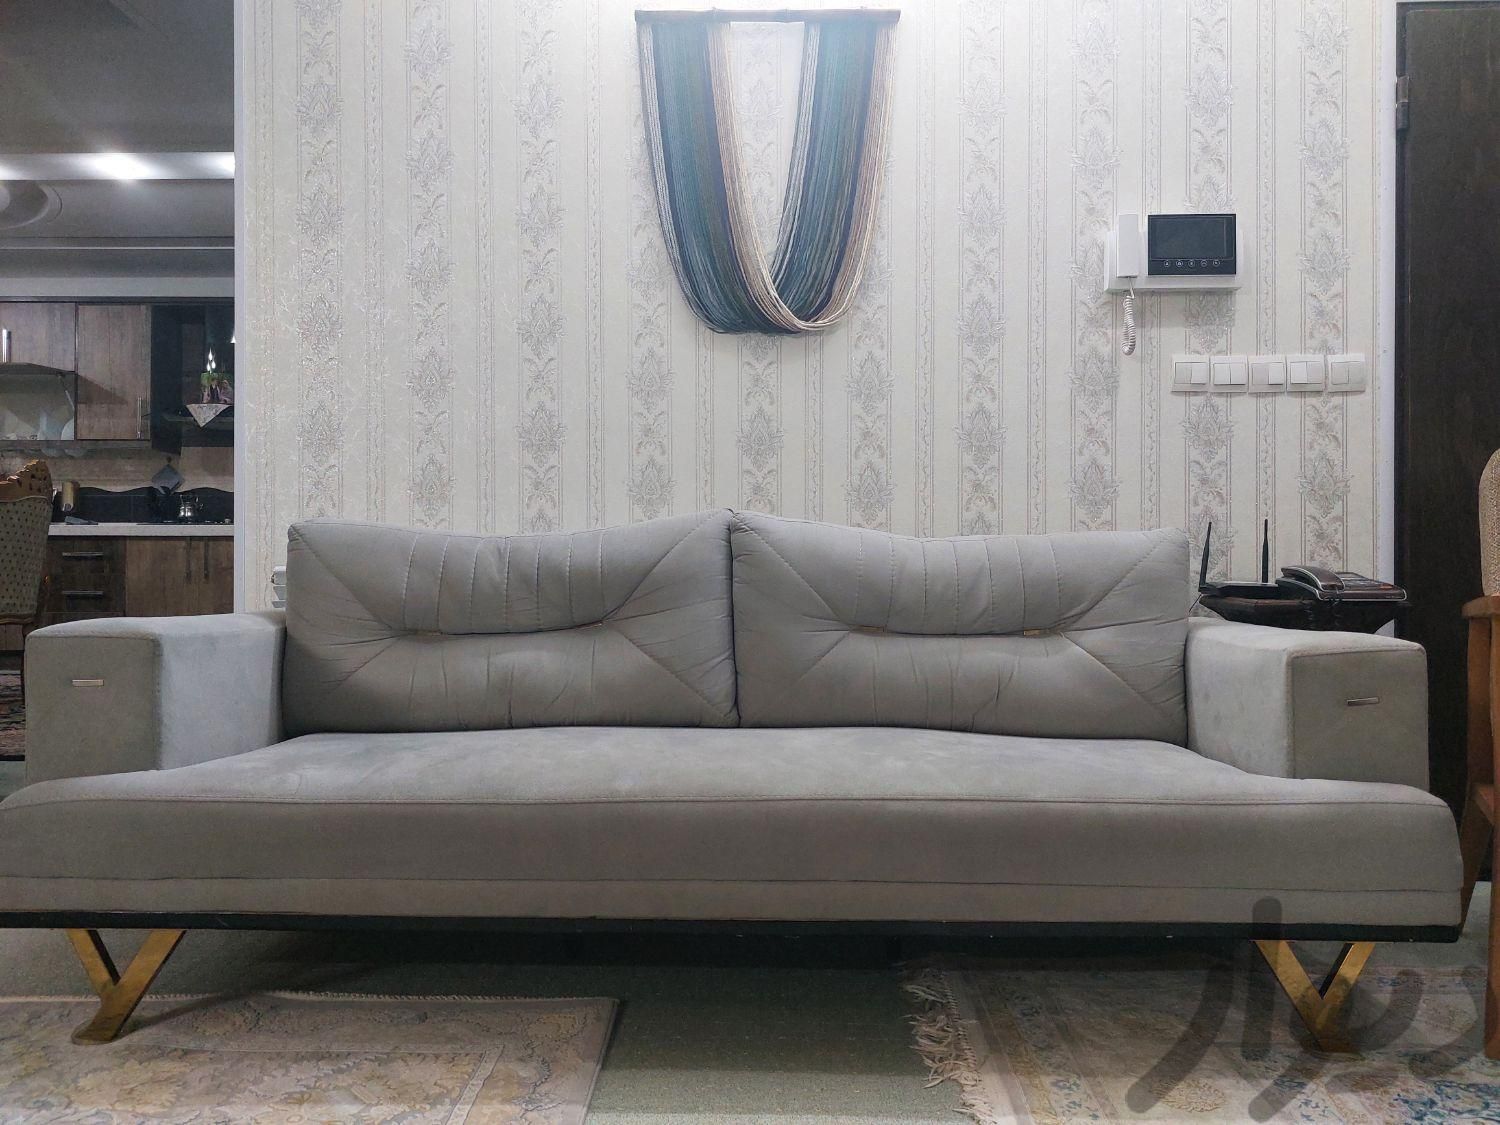 مبلمان راحتی کاناپه سه نفره|مبلمان خانگی و میزعسلی|مشهد, نوفل لوشاتو|دیوار